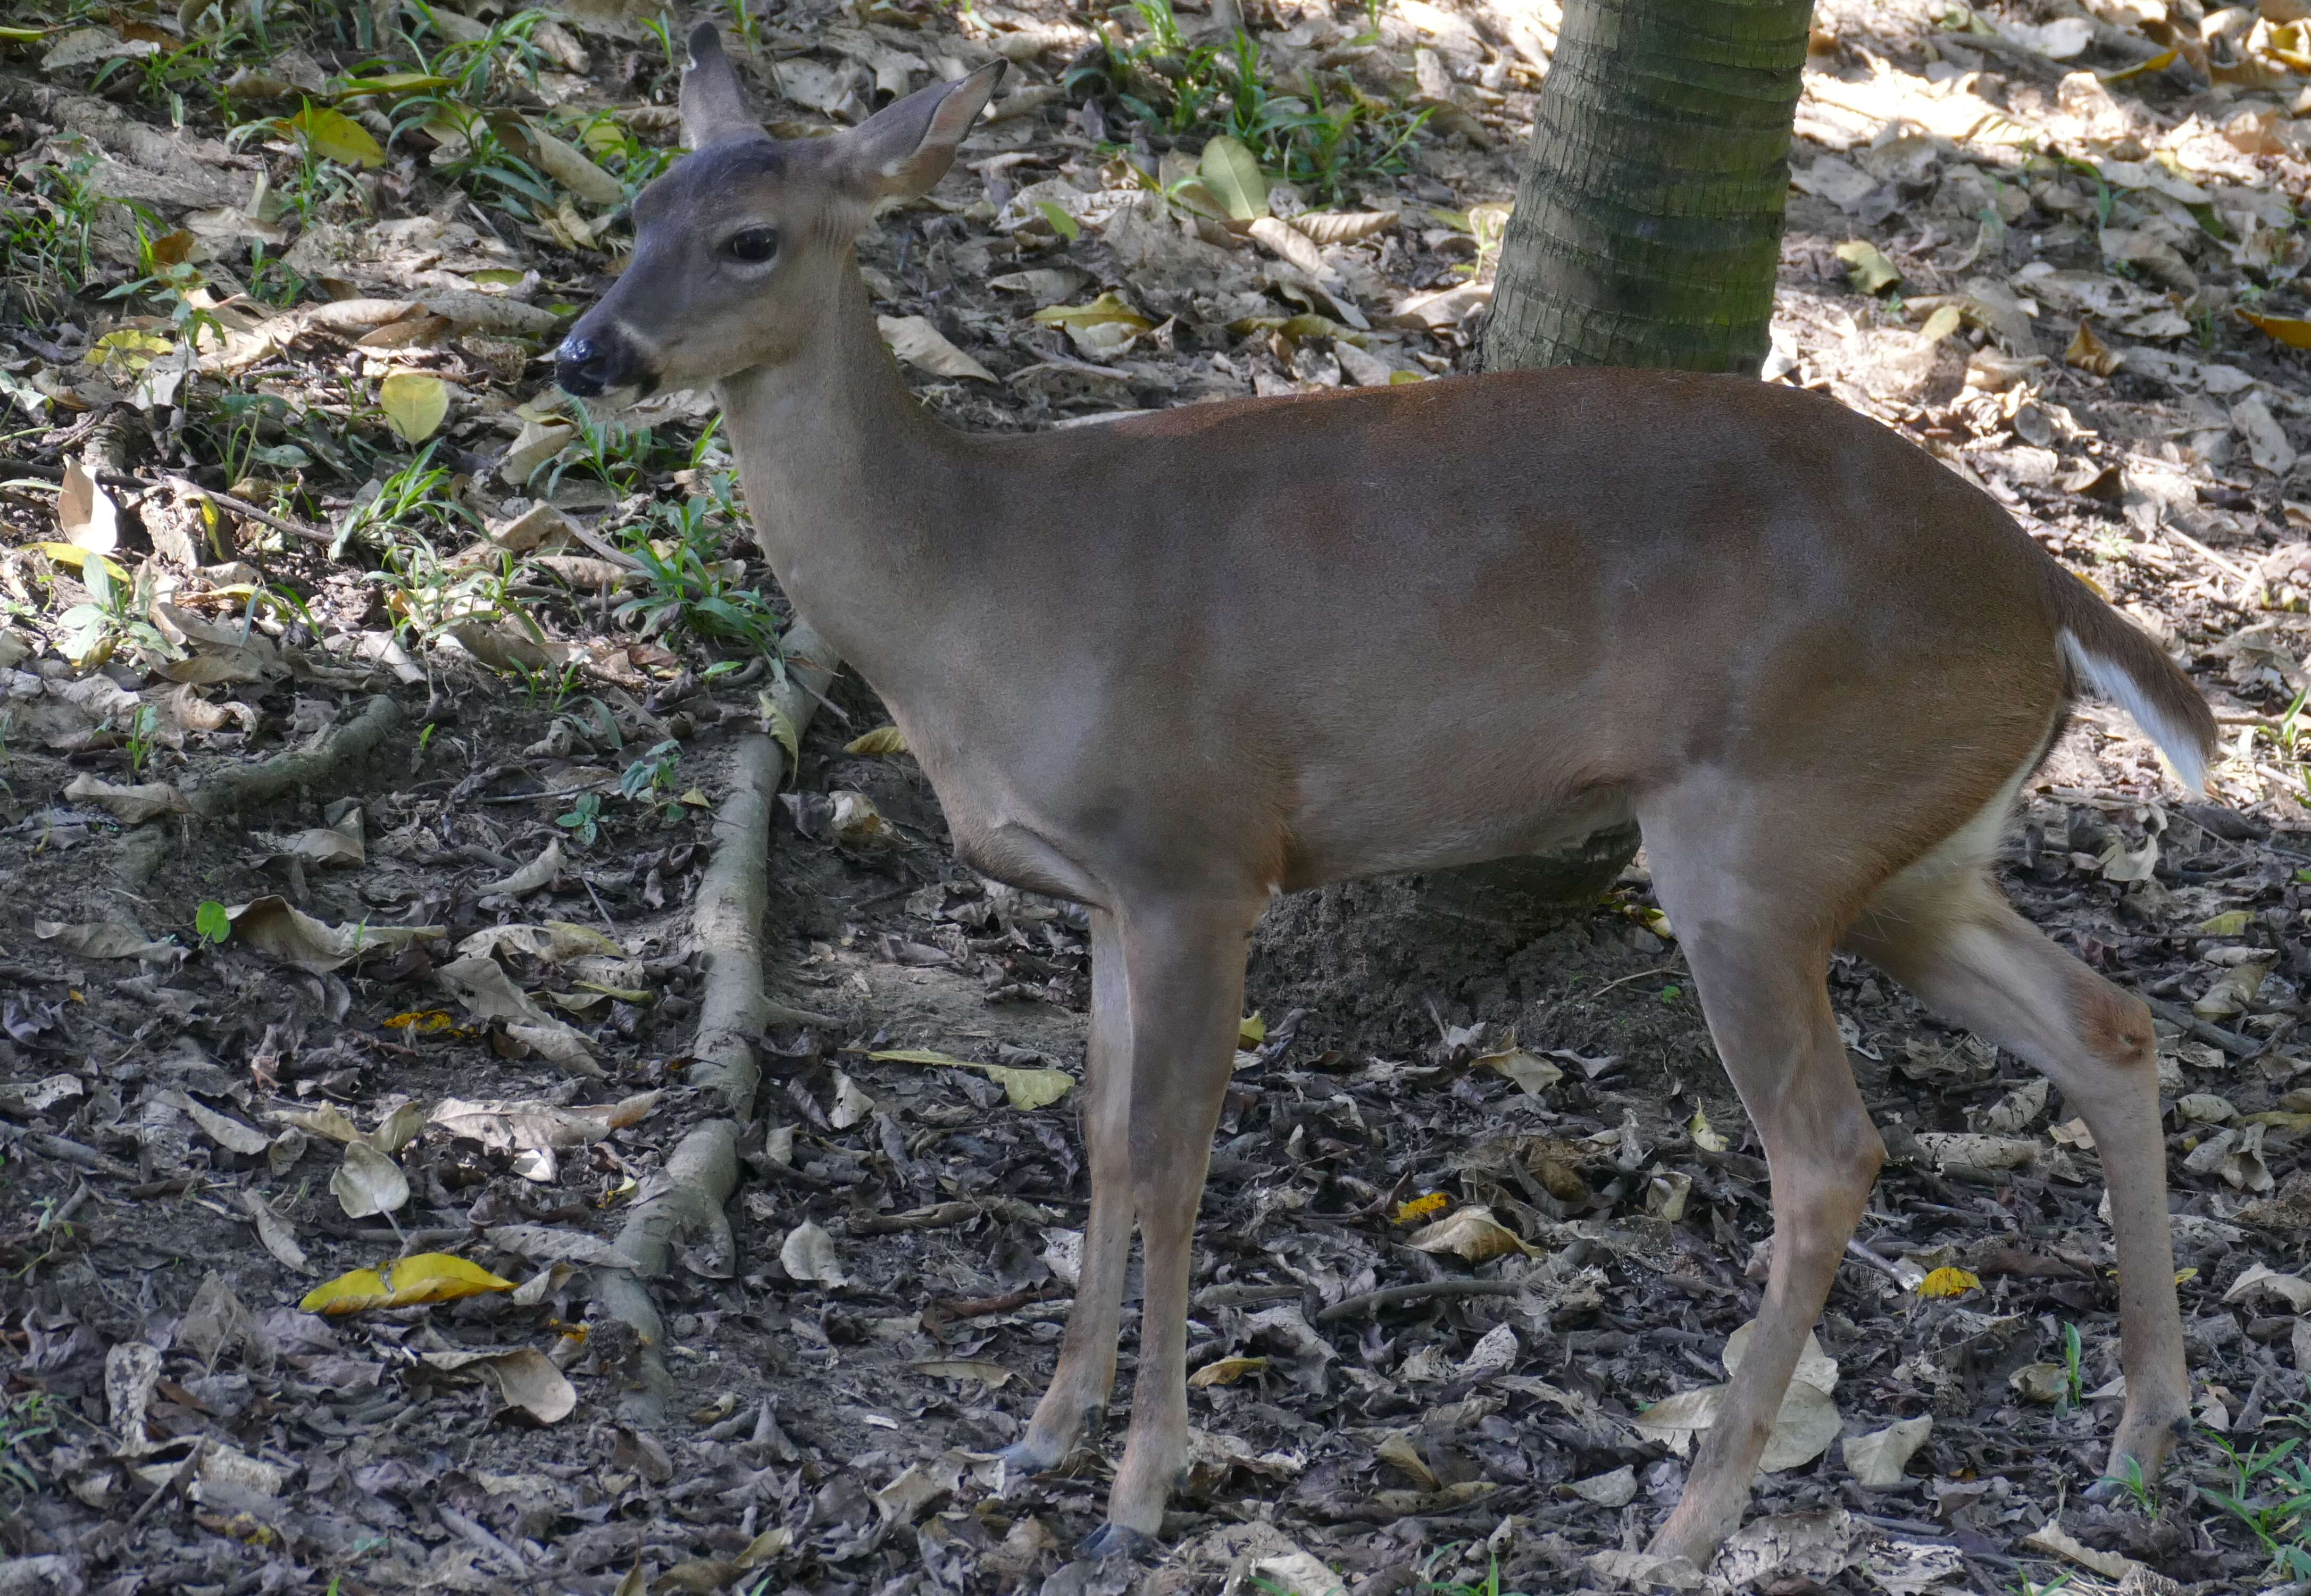 Image of Guatemalan White-tailed Deer